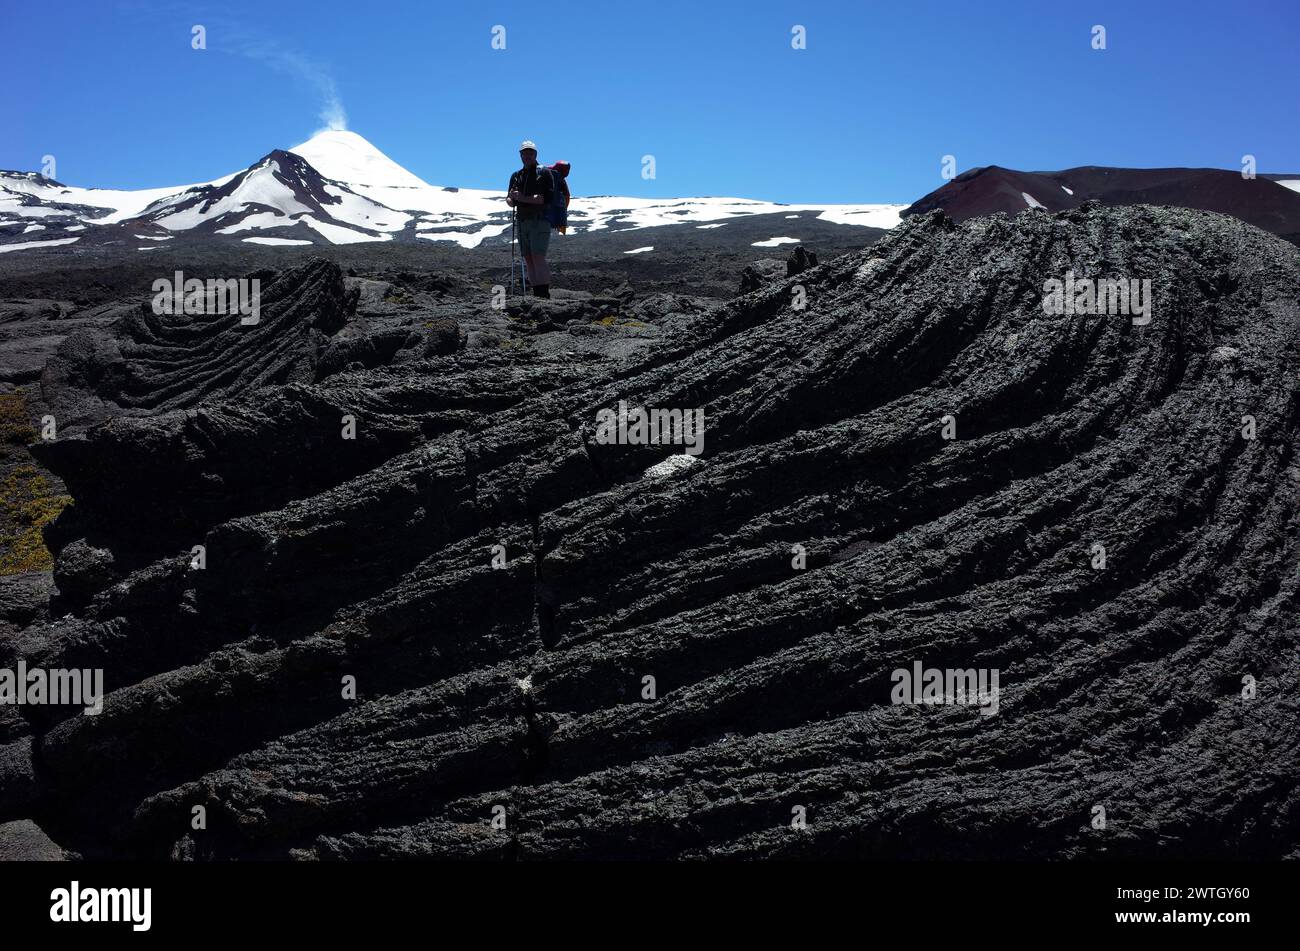 Vulcano attivo, Trekking villarrica percorso escursionistico, lava solidificata dal vulcano Villarrica nel parco nazionale di Villarrica in Cile, buio senza vita Foto Stock